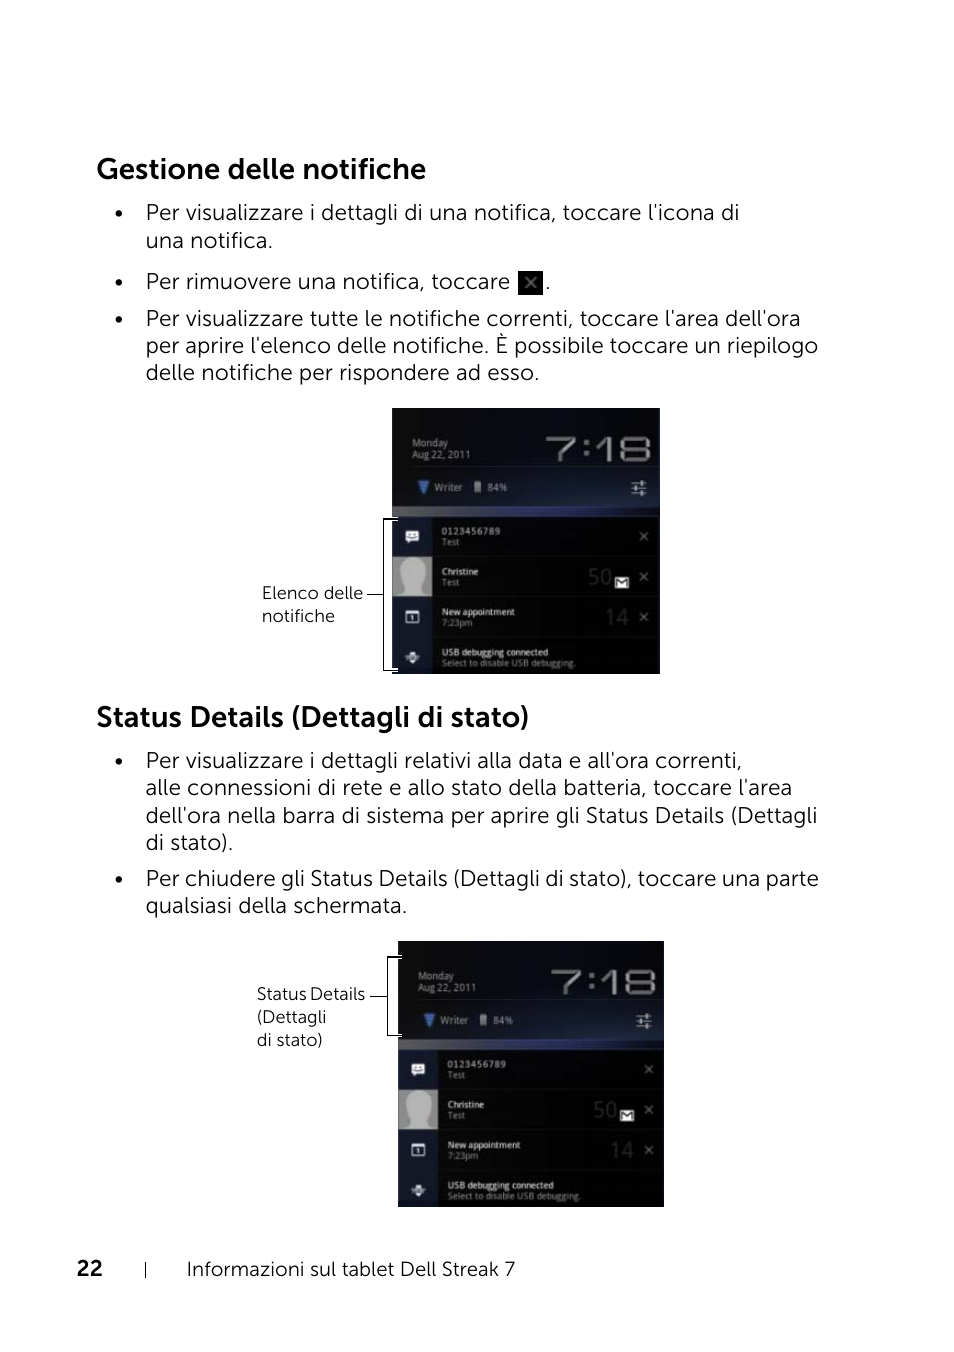 Gestione delle notifiche, Status details (dettagli di stato) | Dell Mobile Streak 7 Manuale d'uso | Pagina 22 / 151